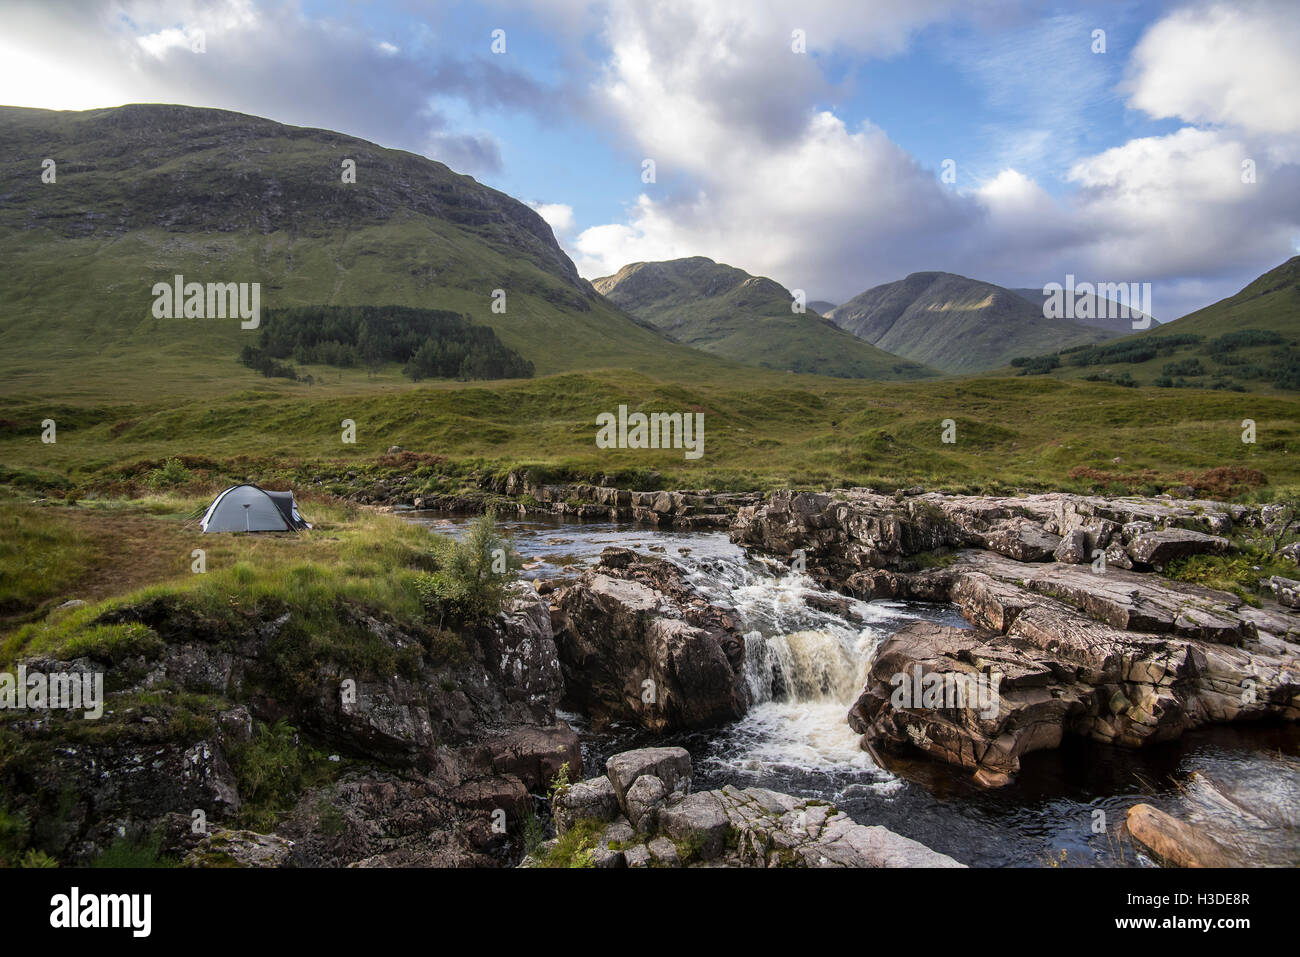 Campeggio selvaggio con cupola leggera tenda lungo il fiume Etive in Glen Etive vicino a Glencoe nelle Highlands scozzesi, Scotland, Regno Unito Foto Stock